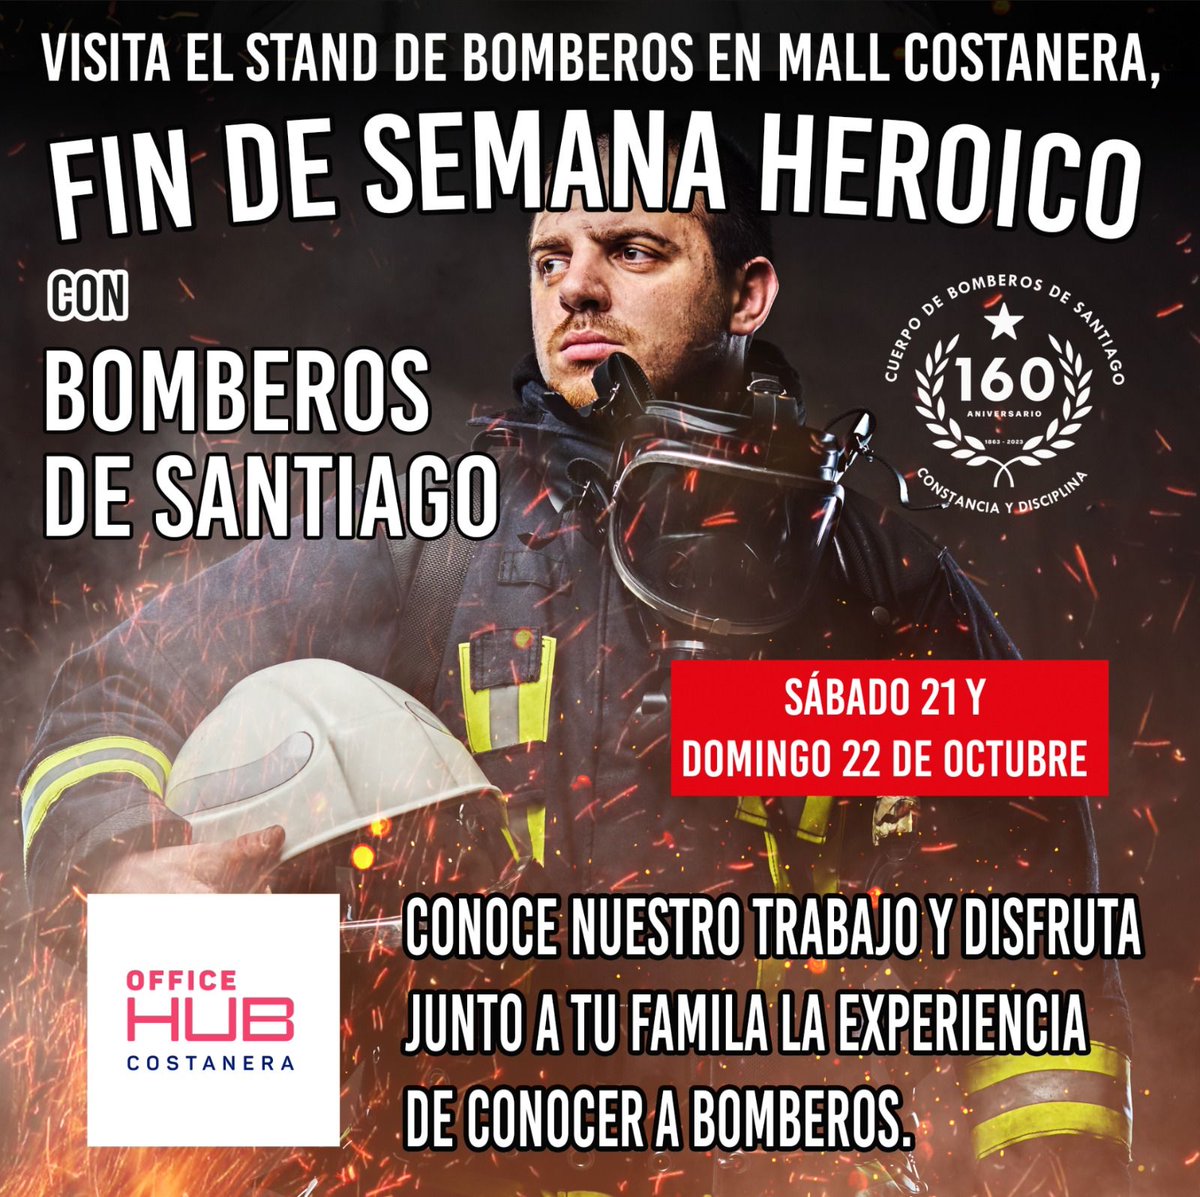 Este sábado 21 y domingo 22 de octubre, visita con tu familia el stand del Cuerpo de Bomberos de Santiago en el @costaneracenter